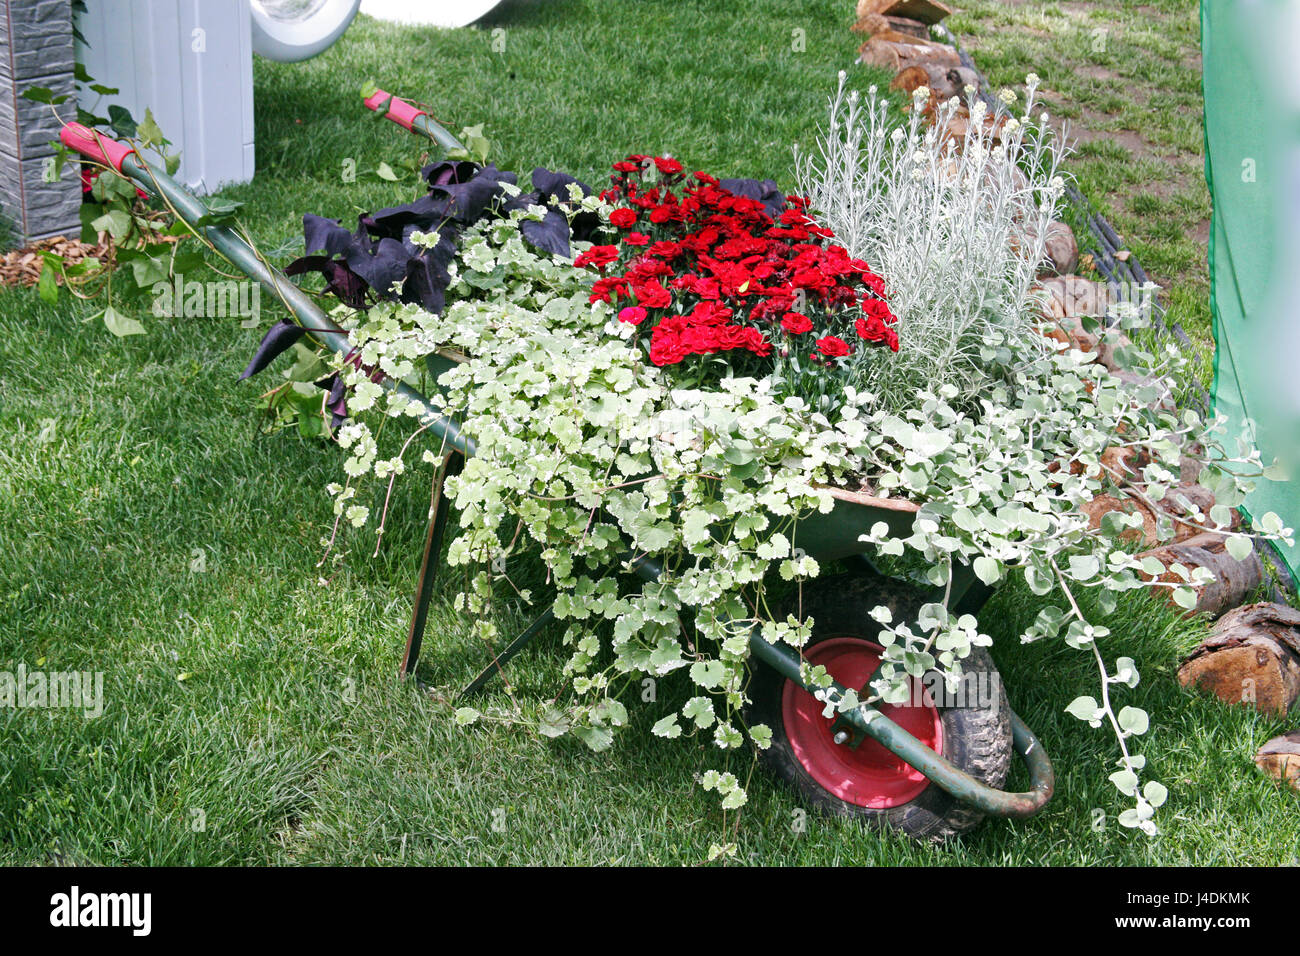 Blumen, Pflanzen, Gartenarbeit und Arrangements, Frühling, Sommer, Kroatien, 23 Stockfoto